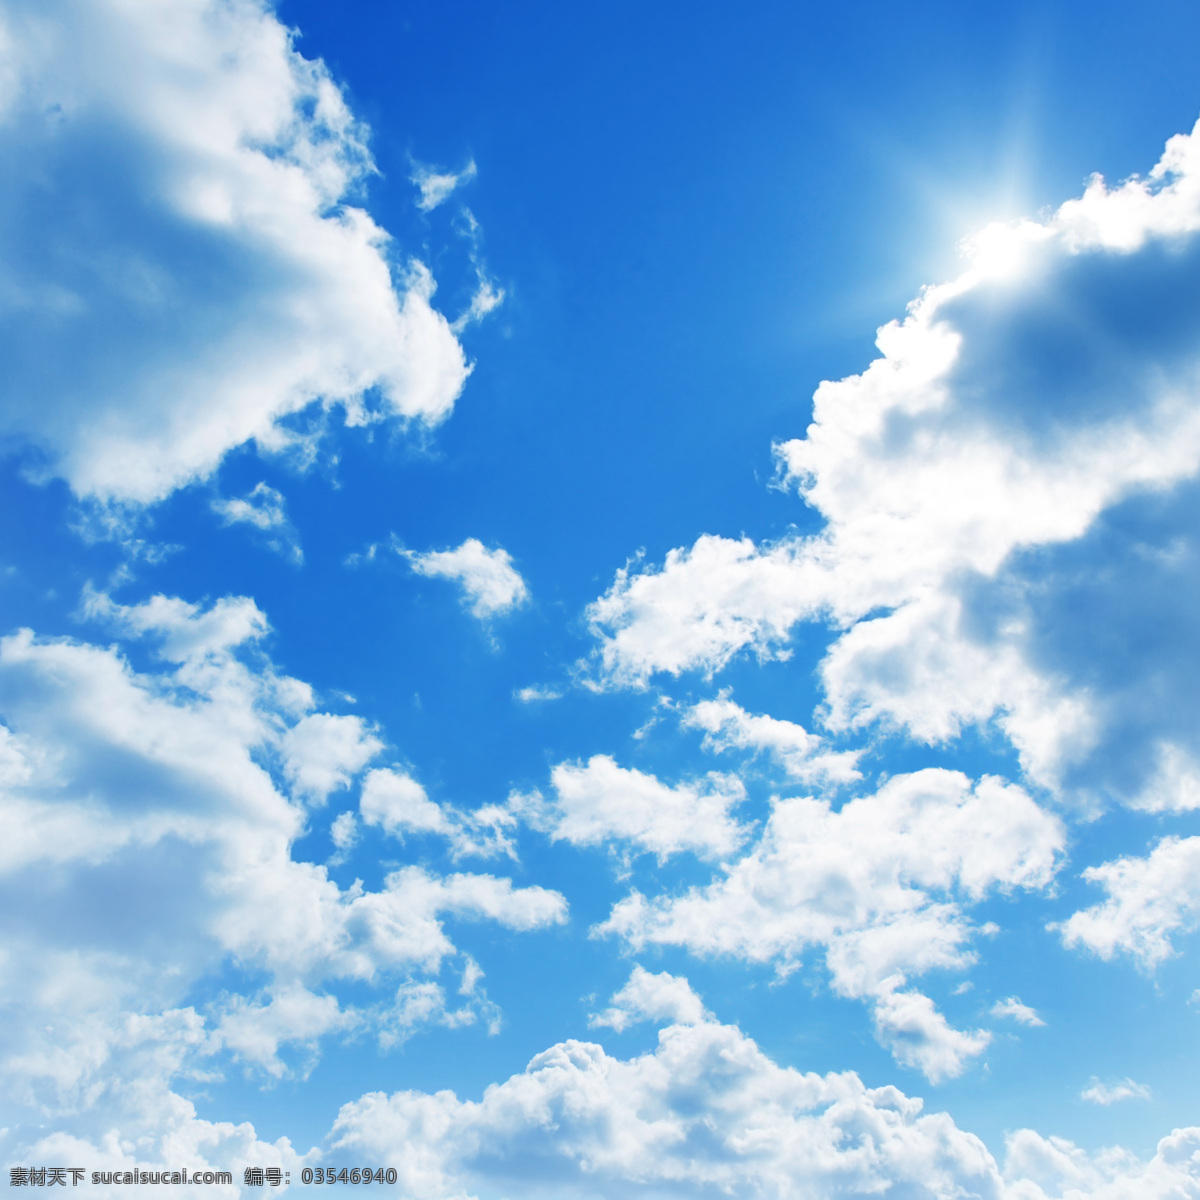 蓝天白云 蓝天 白云 模板下载 天空 浮云 云彩 流云 风起云涌 晴朗 午后 干净的天空 自然风光 飘云 云朵 白云素材 设计师 自然风景 自然景观